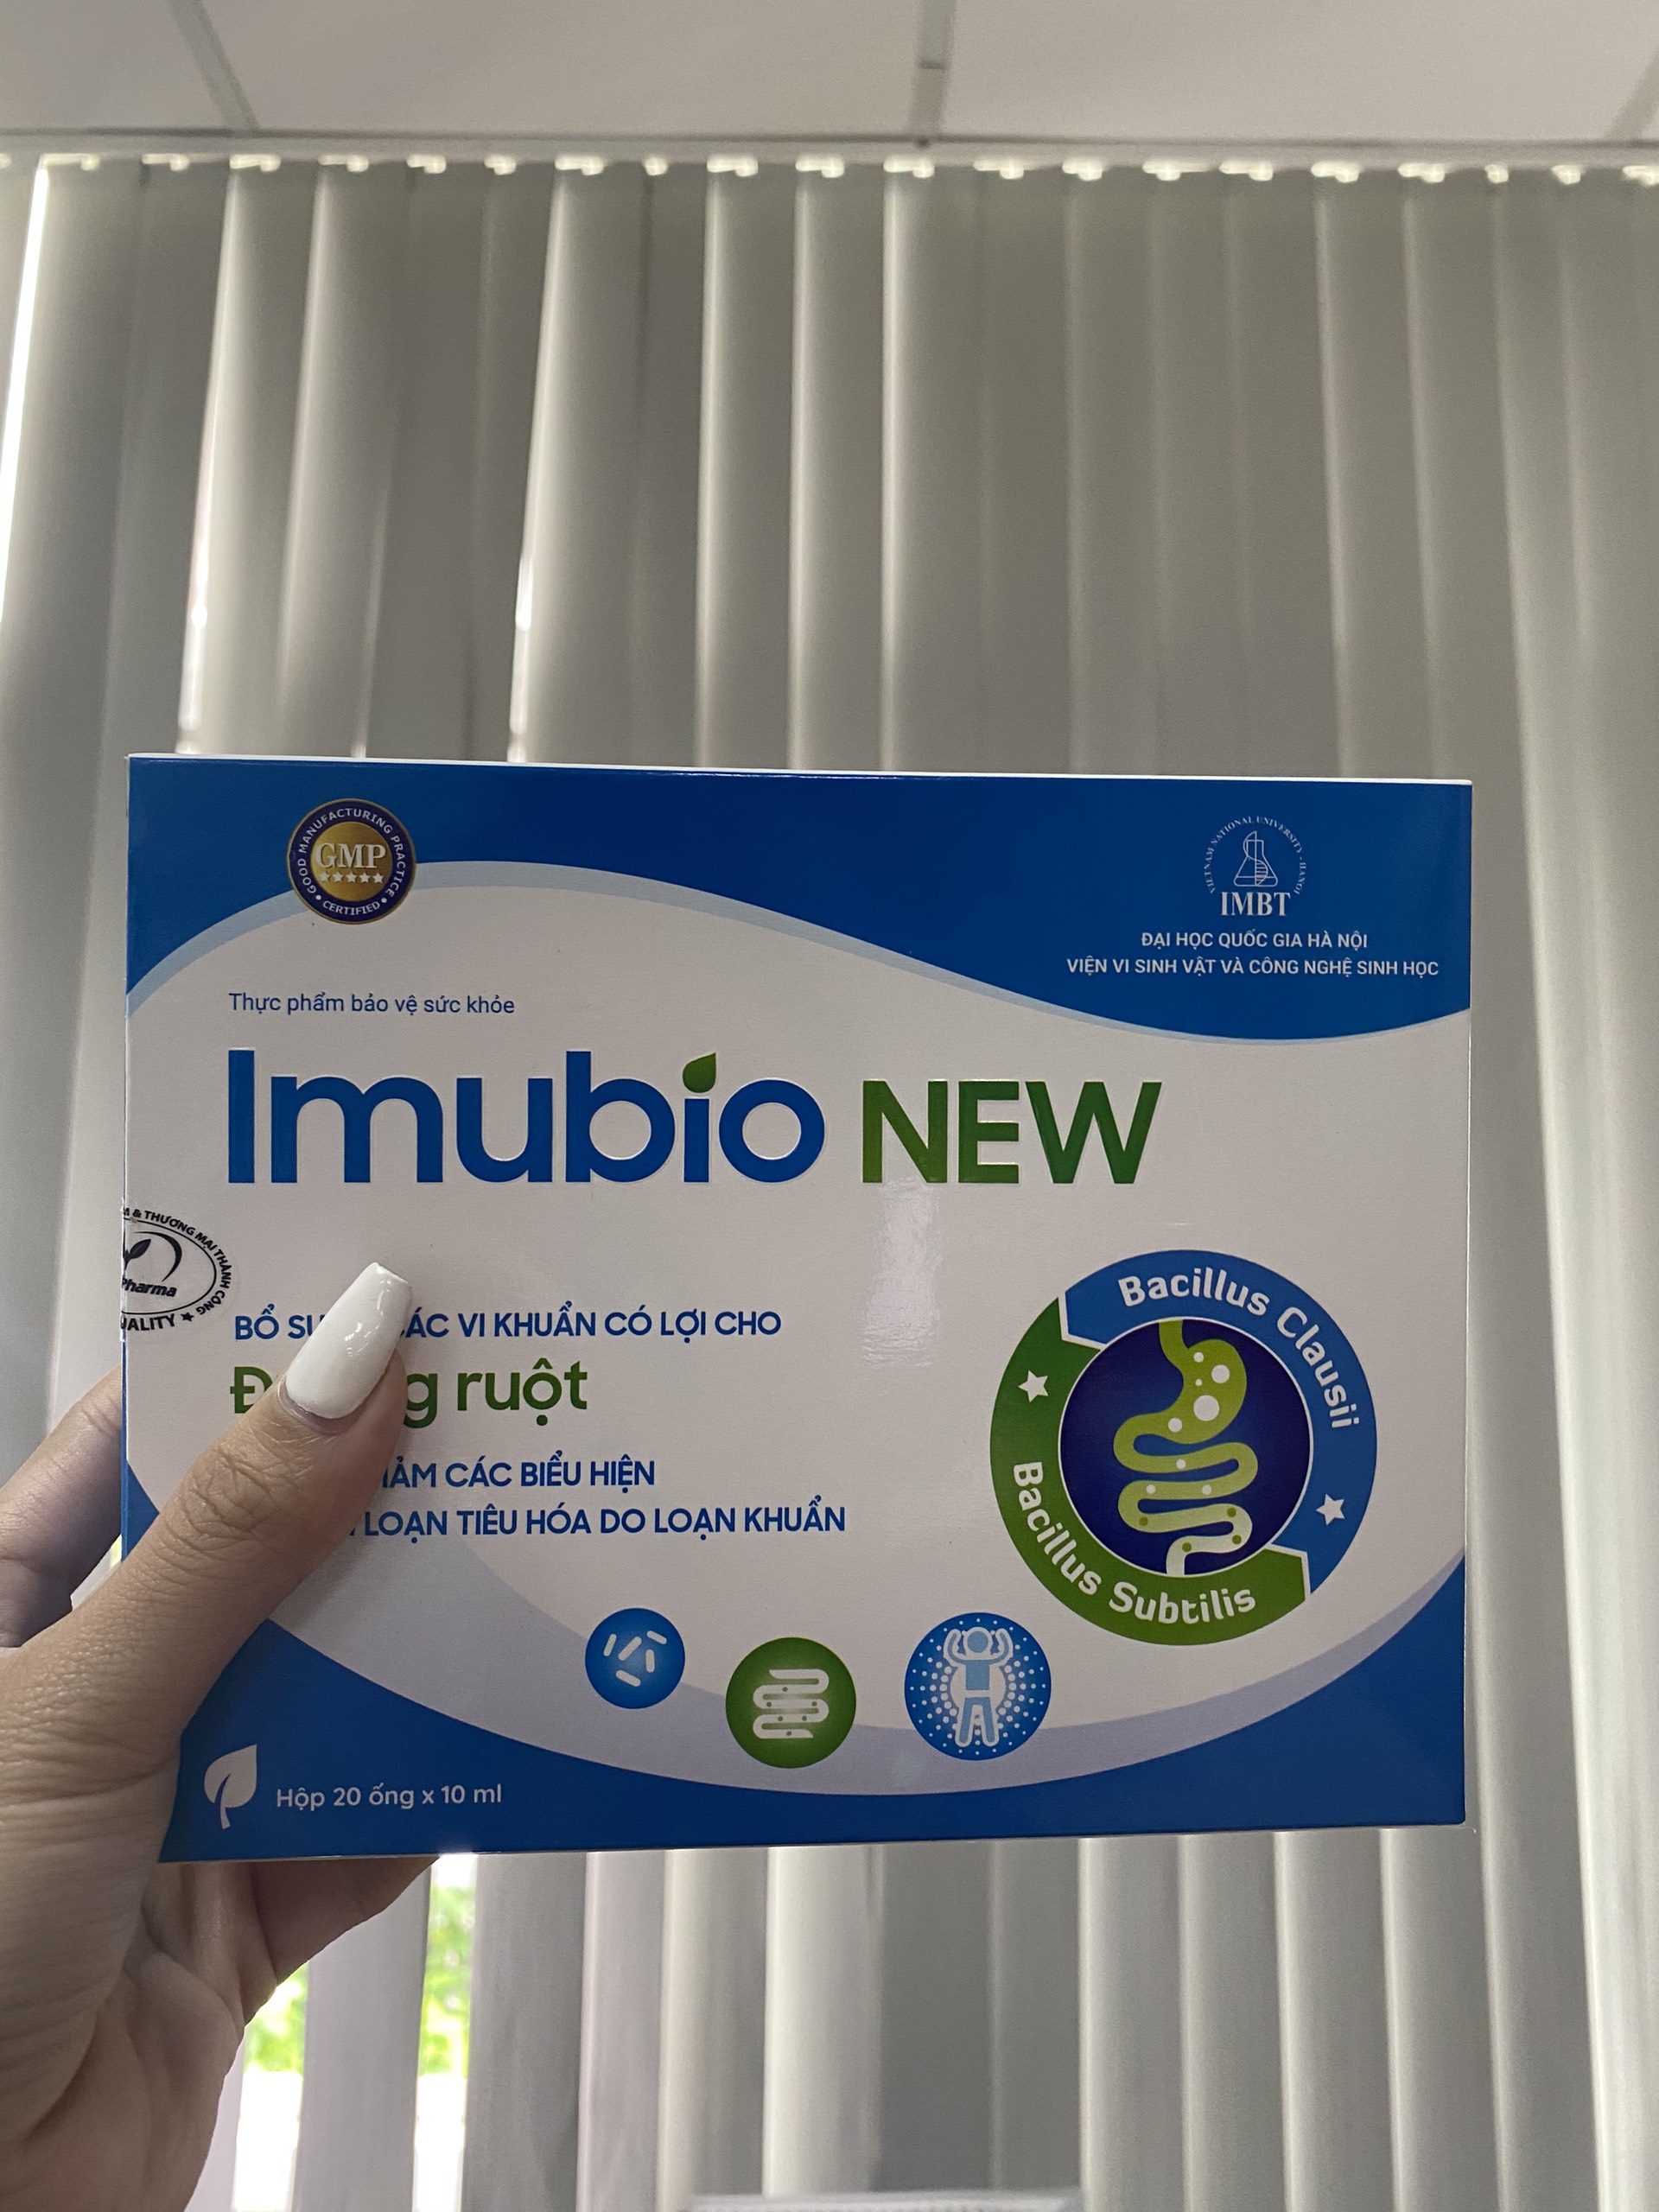 Imubio New Bổ sung vi khuẩn có lợi cho đường ruột, hỗ trợ giảm các biểu hiện của rối loạn tiêu hóa - Hộp 20 ống 